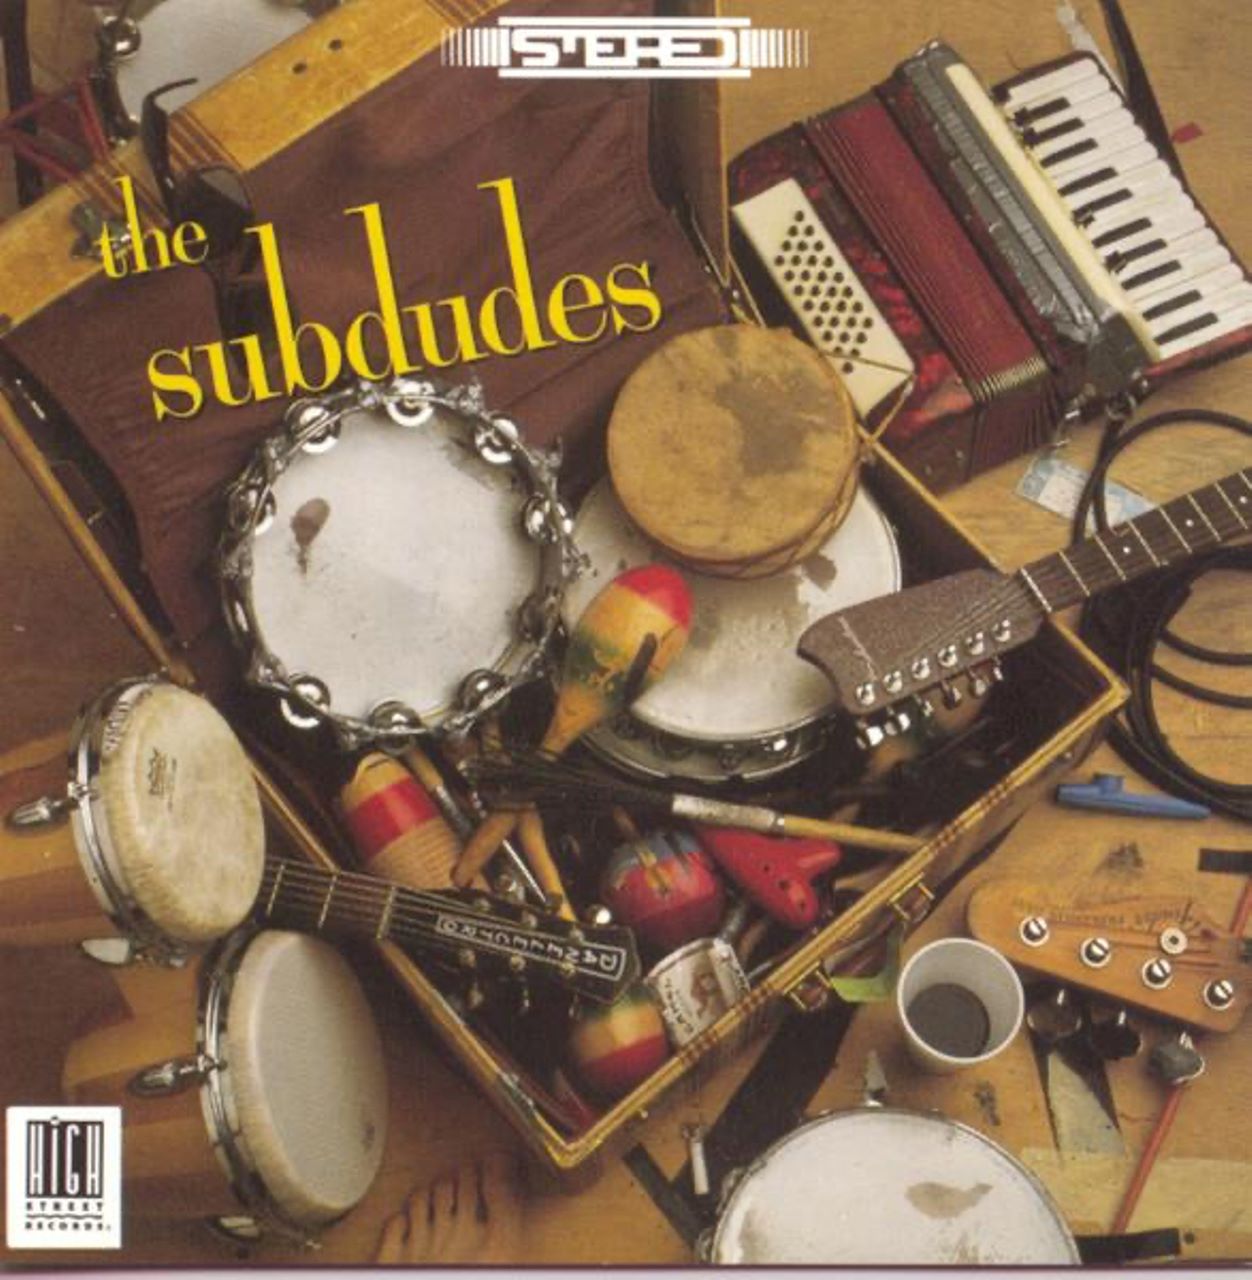 Subdudes – The Subdudes cover album